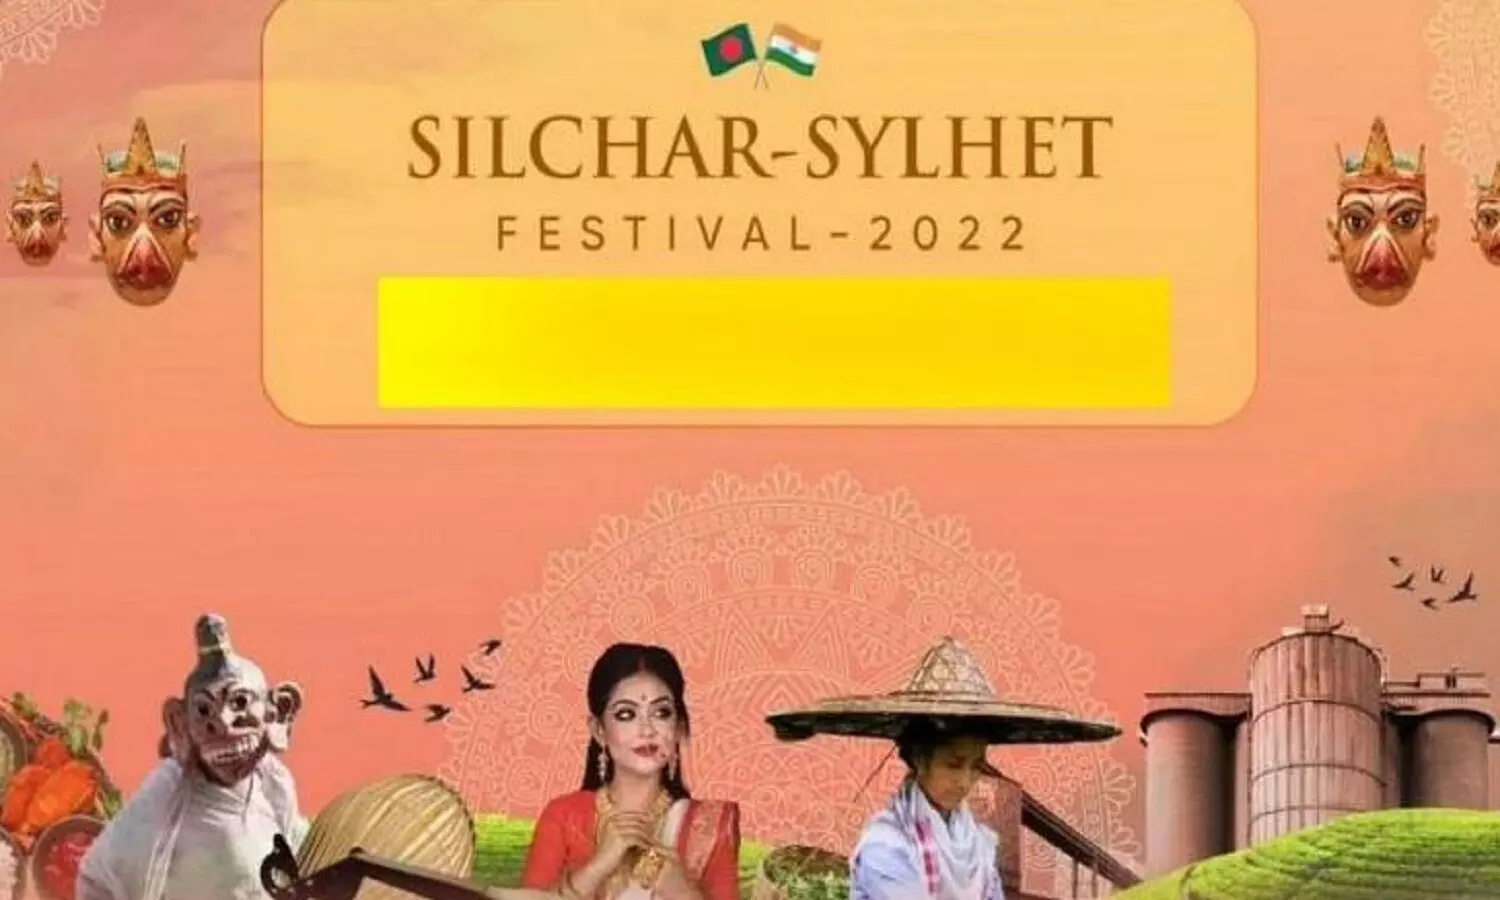 Silchar Sylhet festival in assam